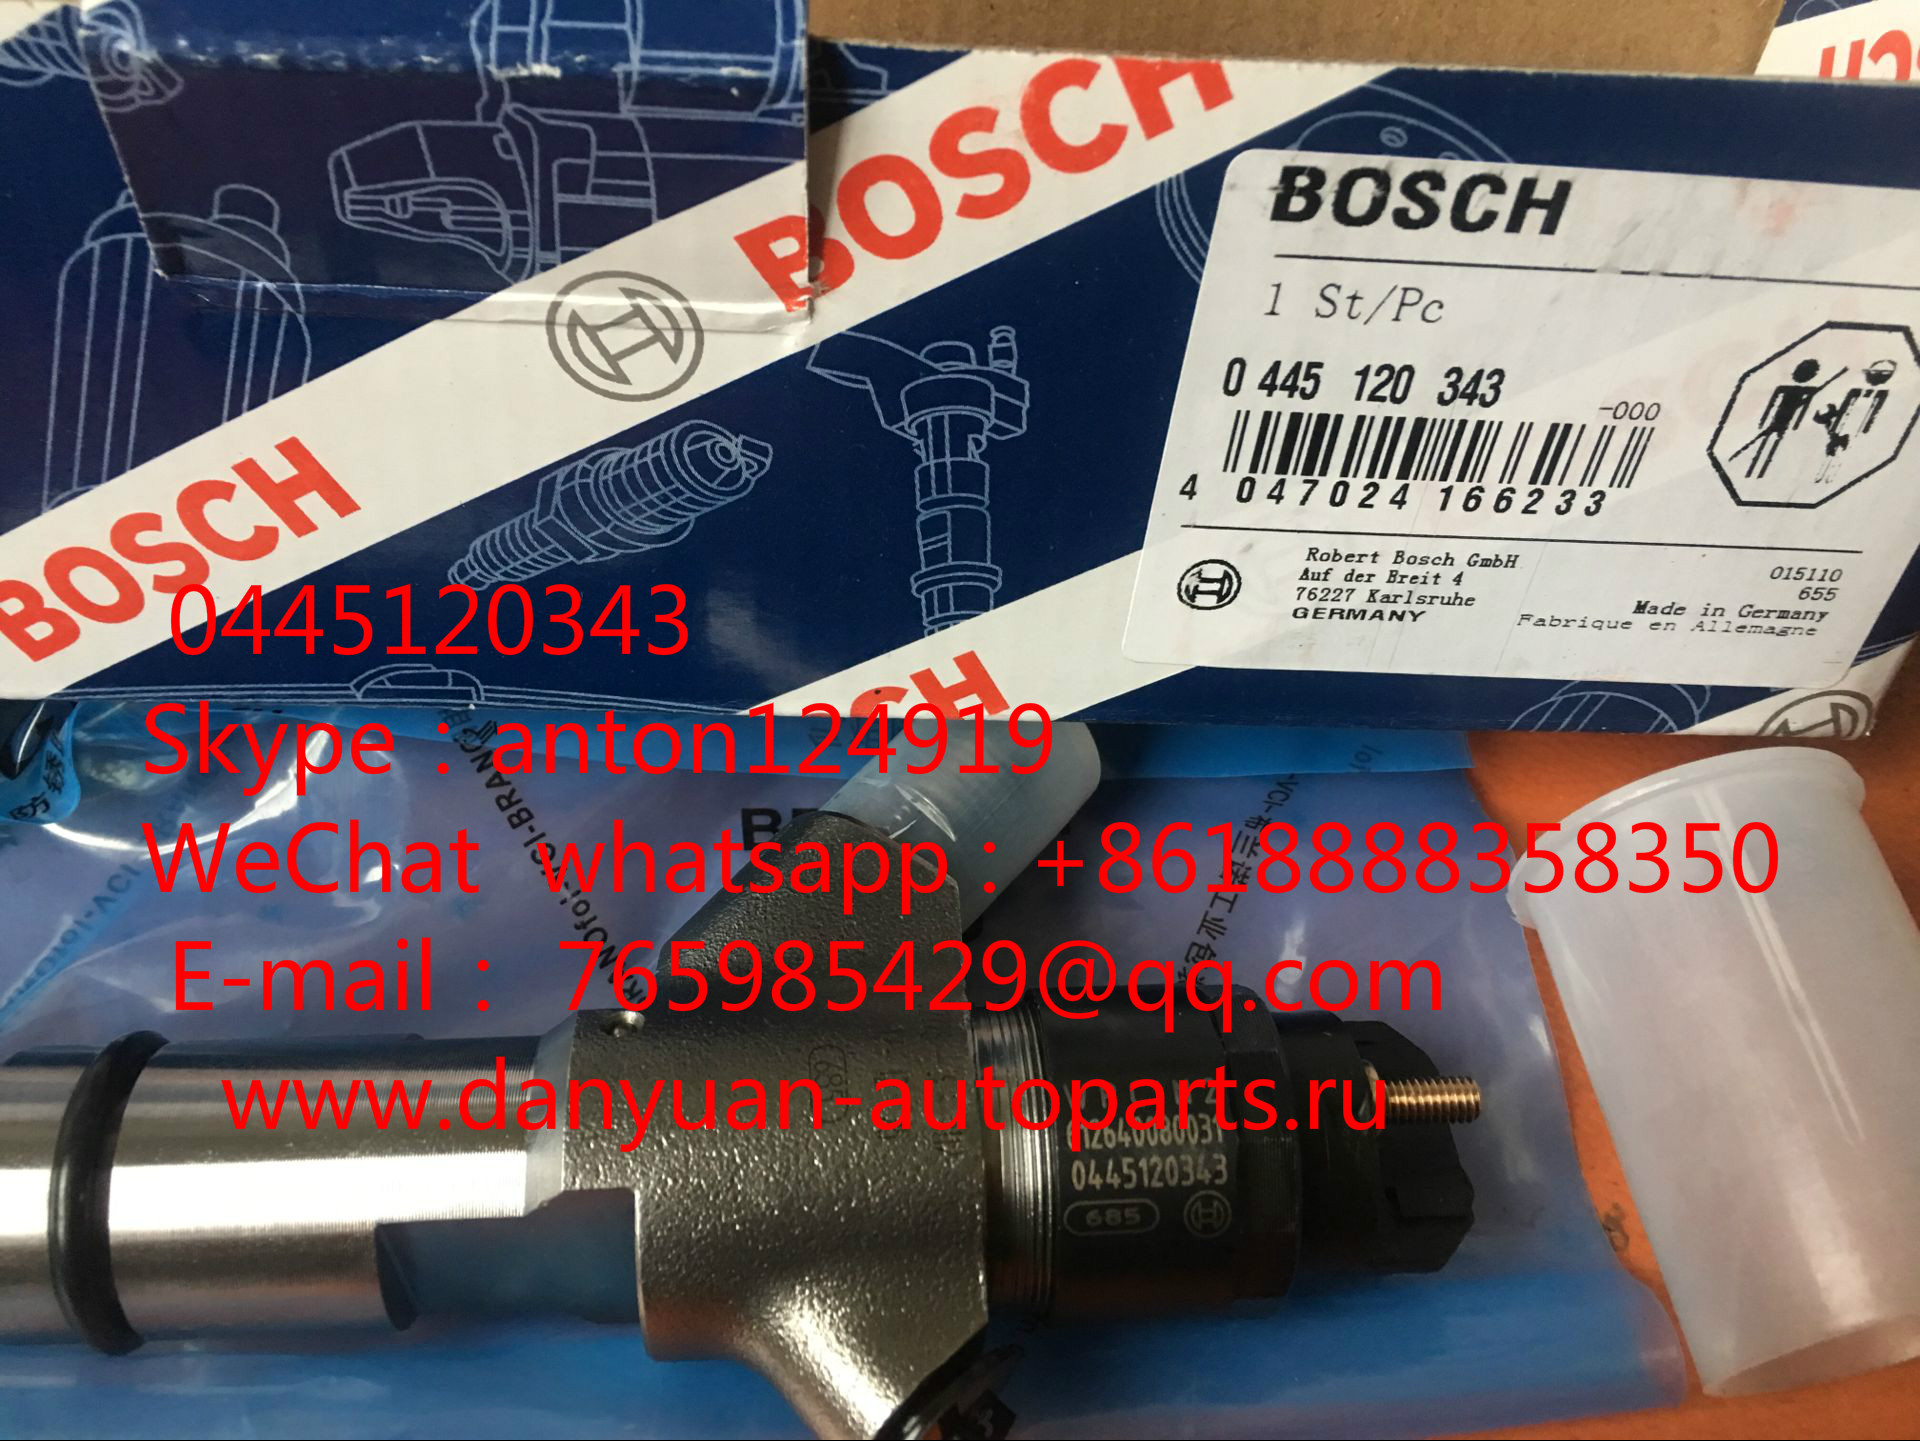 Bosch 0445120343 / 612640080031 для двигателя Weichai WP10.336E40 (евро4)--Shaanxi WP 10 Евро-4